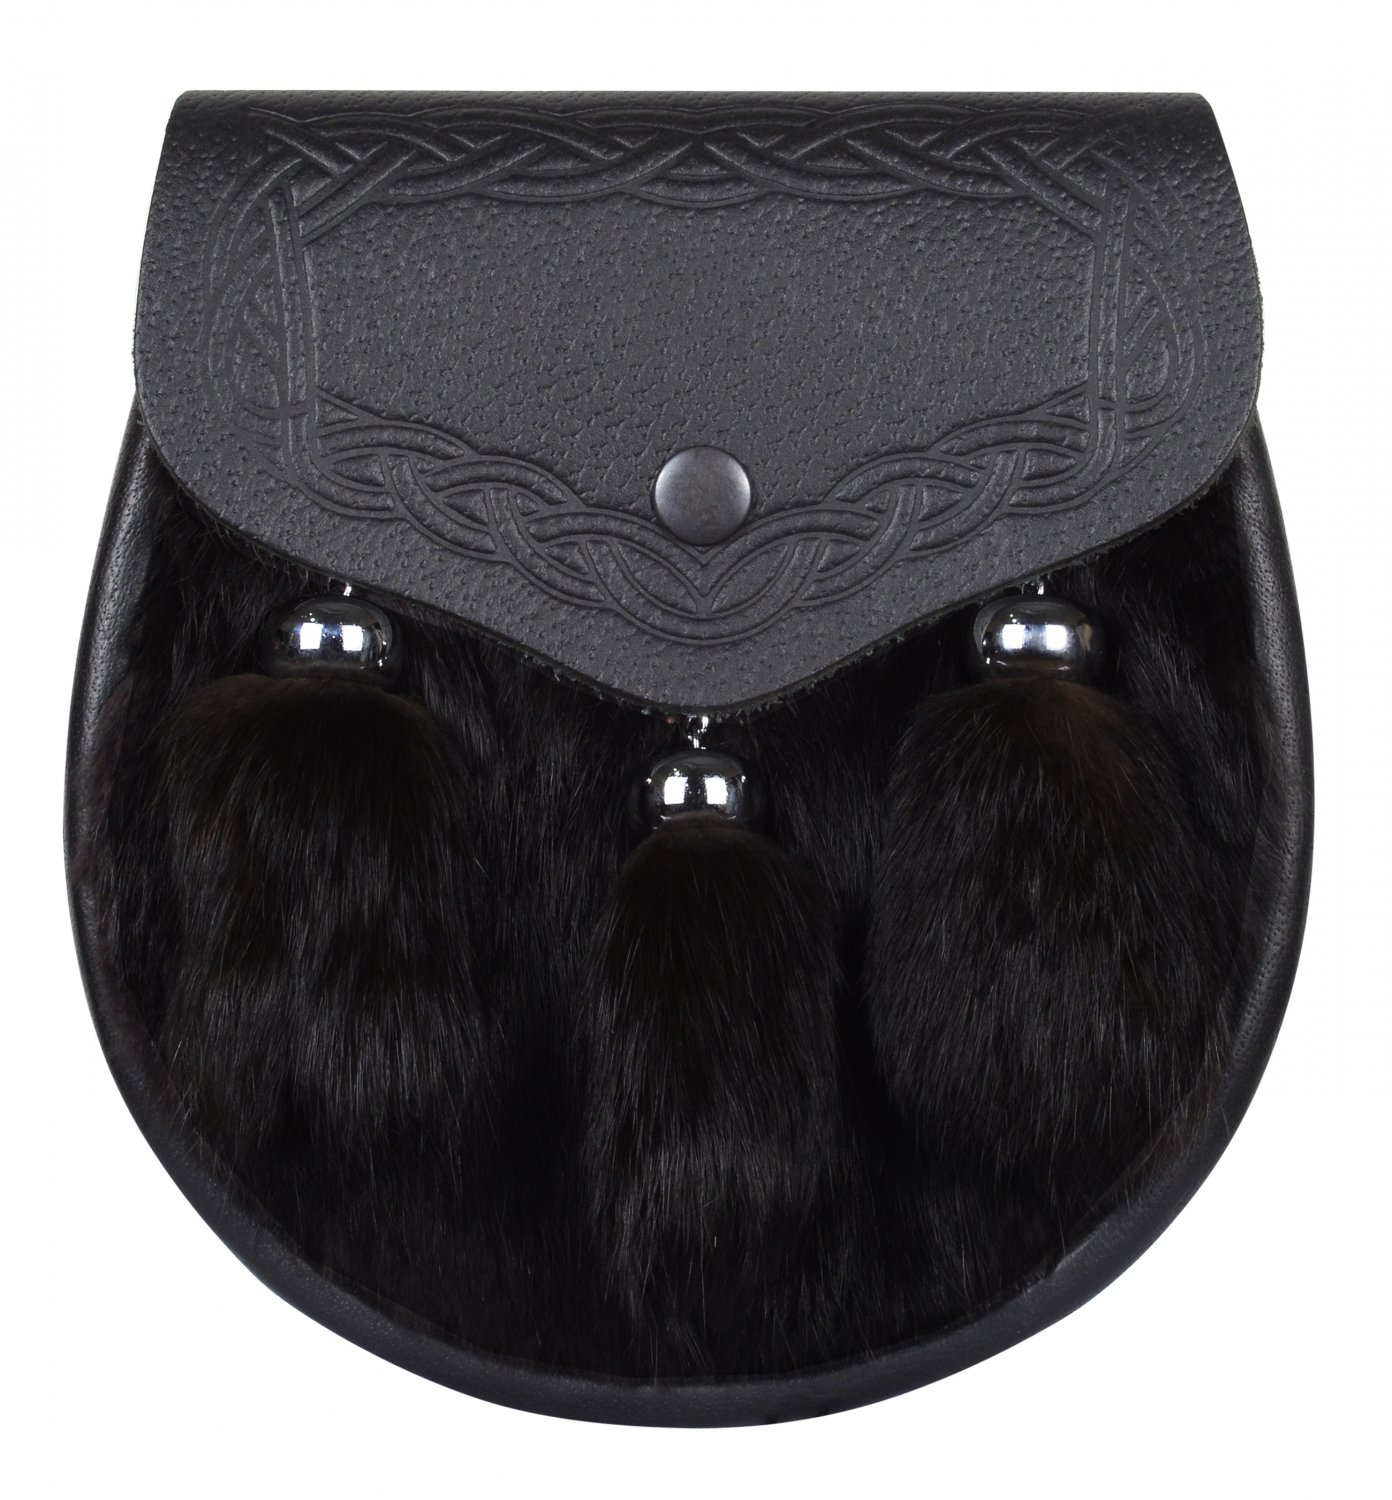 Scottish Semi Dress Black Rabbit Fur Kilt Sporran with Chain Belt.